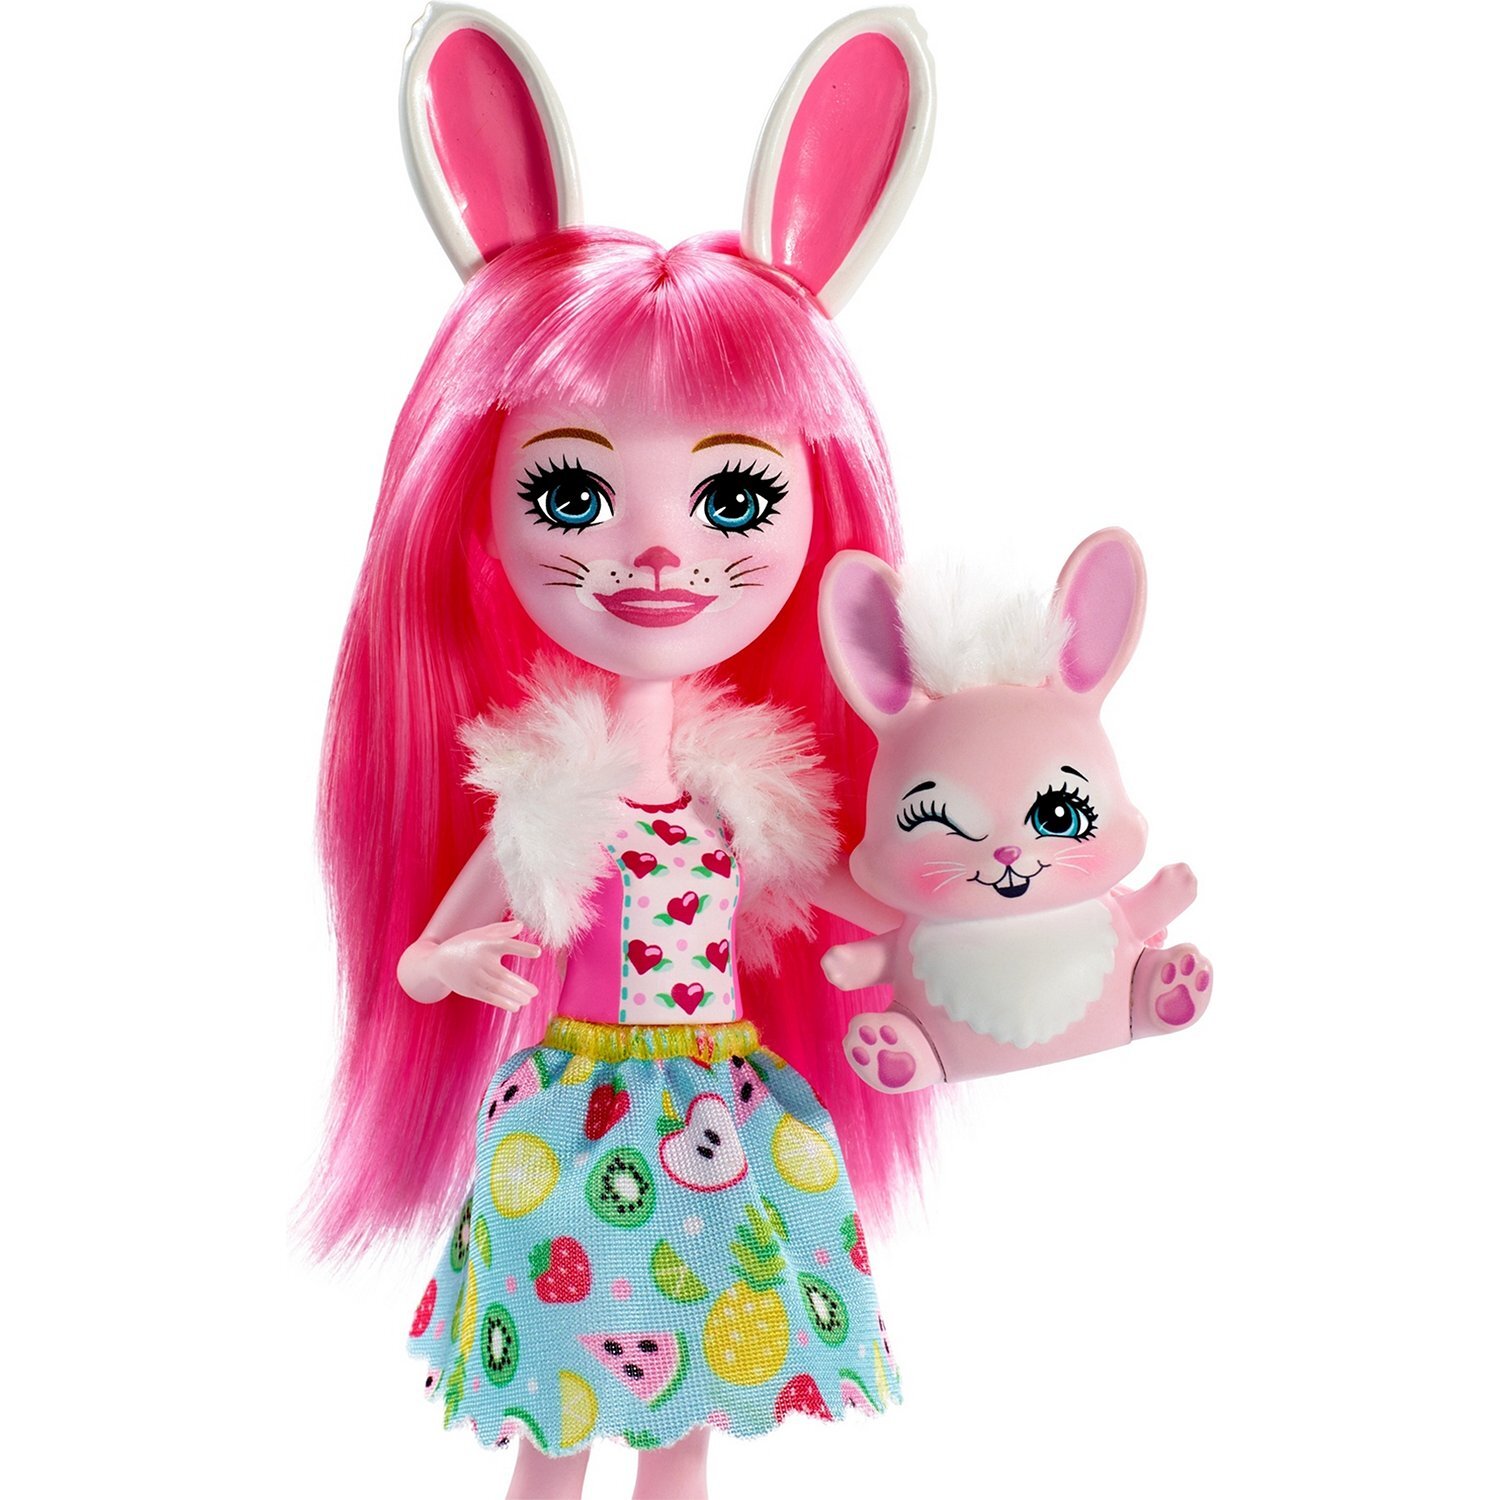 Фото энчантималс. Кукла Enchantimals Бри кроля с любимой зверюшкой, 15 см, fxm73. Кукла Энчантималс Бри кроля и Твист. Кукла Энчантималс Бри кроля. Энчантималс Бри Банни.